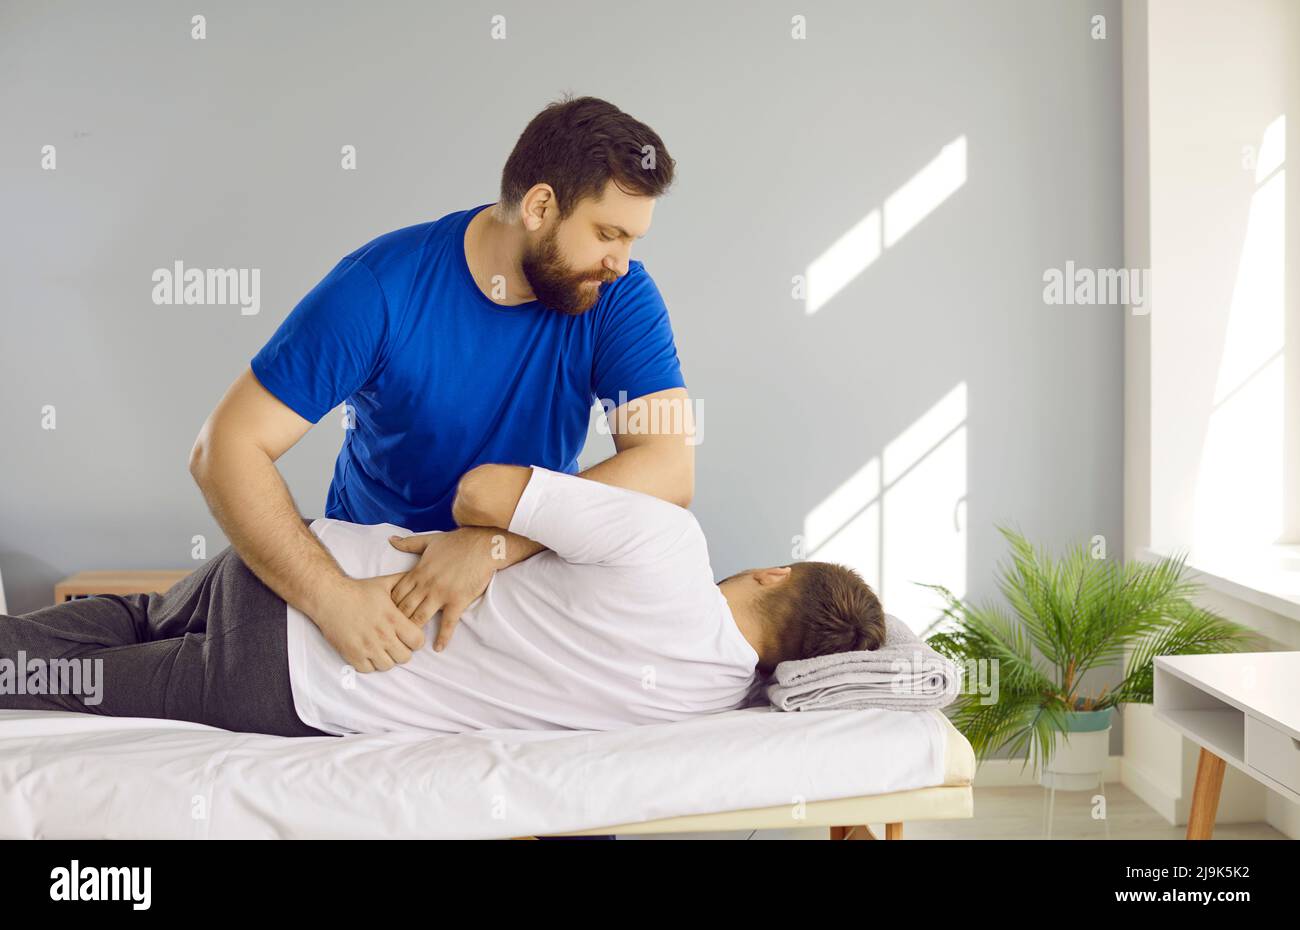 Chiropratico, fisioterapista, osteopata, o terapista manuale che aiuta l'uomo con problemi alla schiena Foto Stock